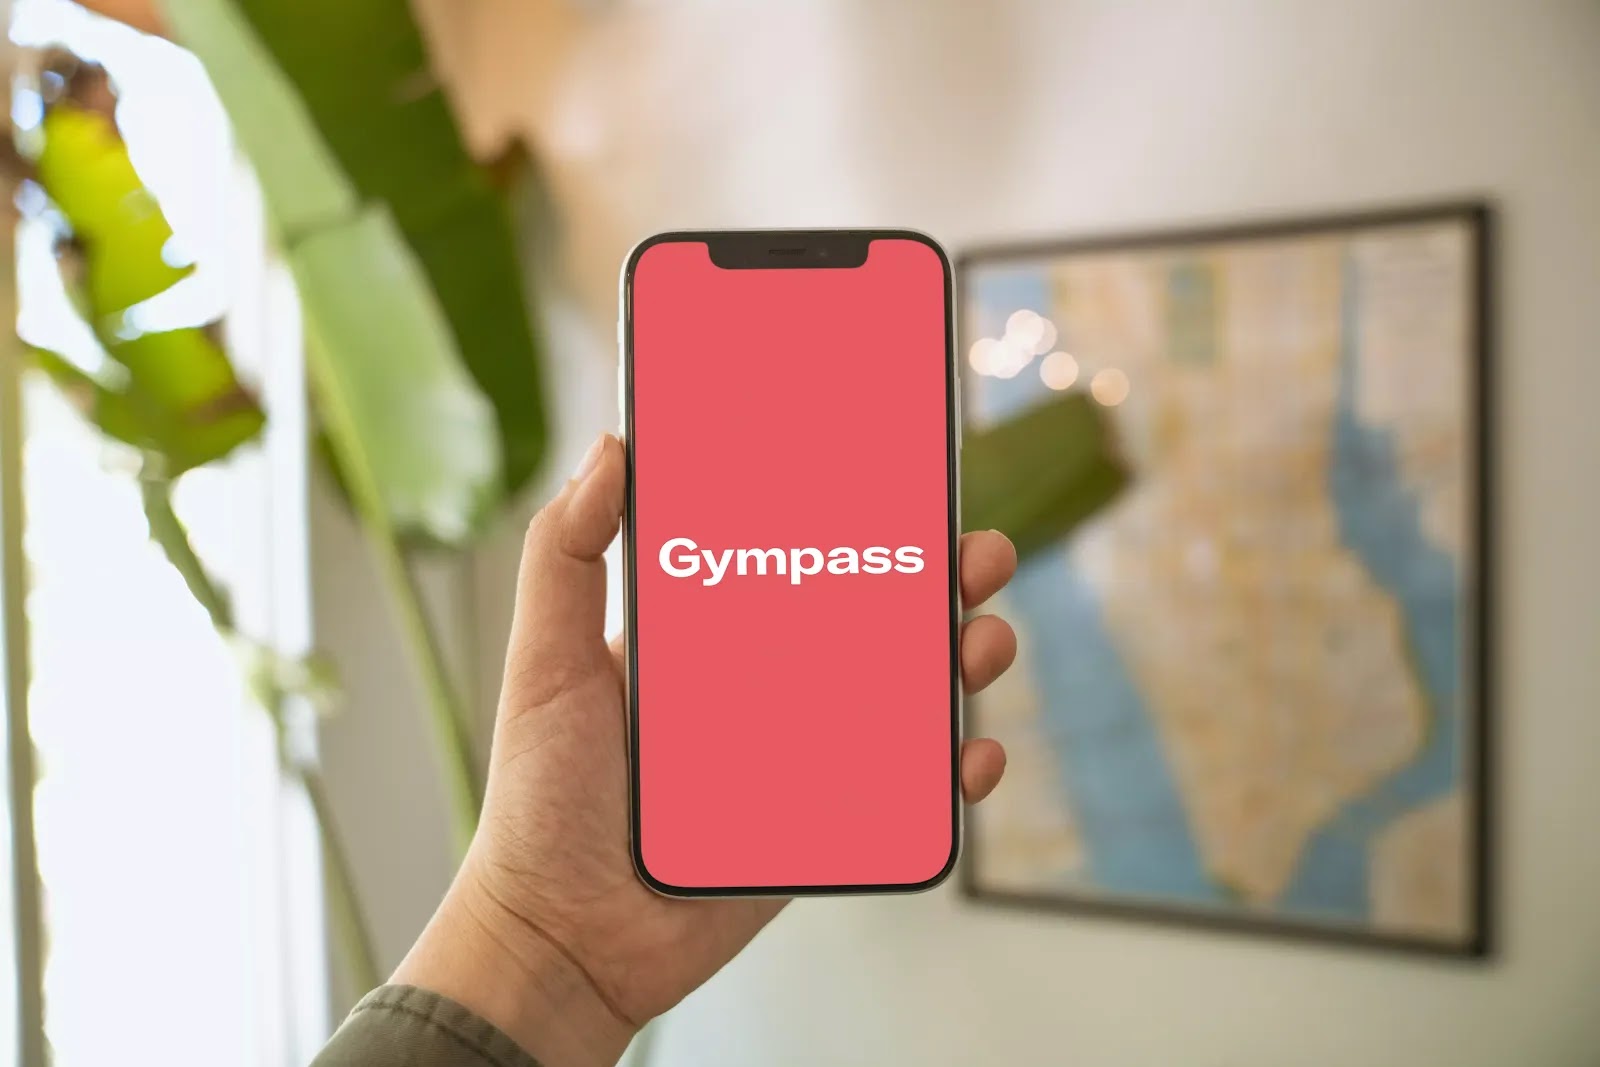 Gympass lança Plano Free para os associados da ANAFE - Anafe